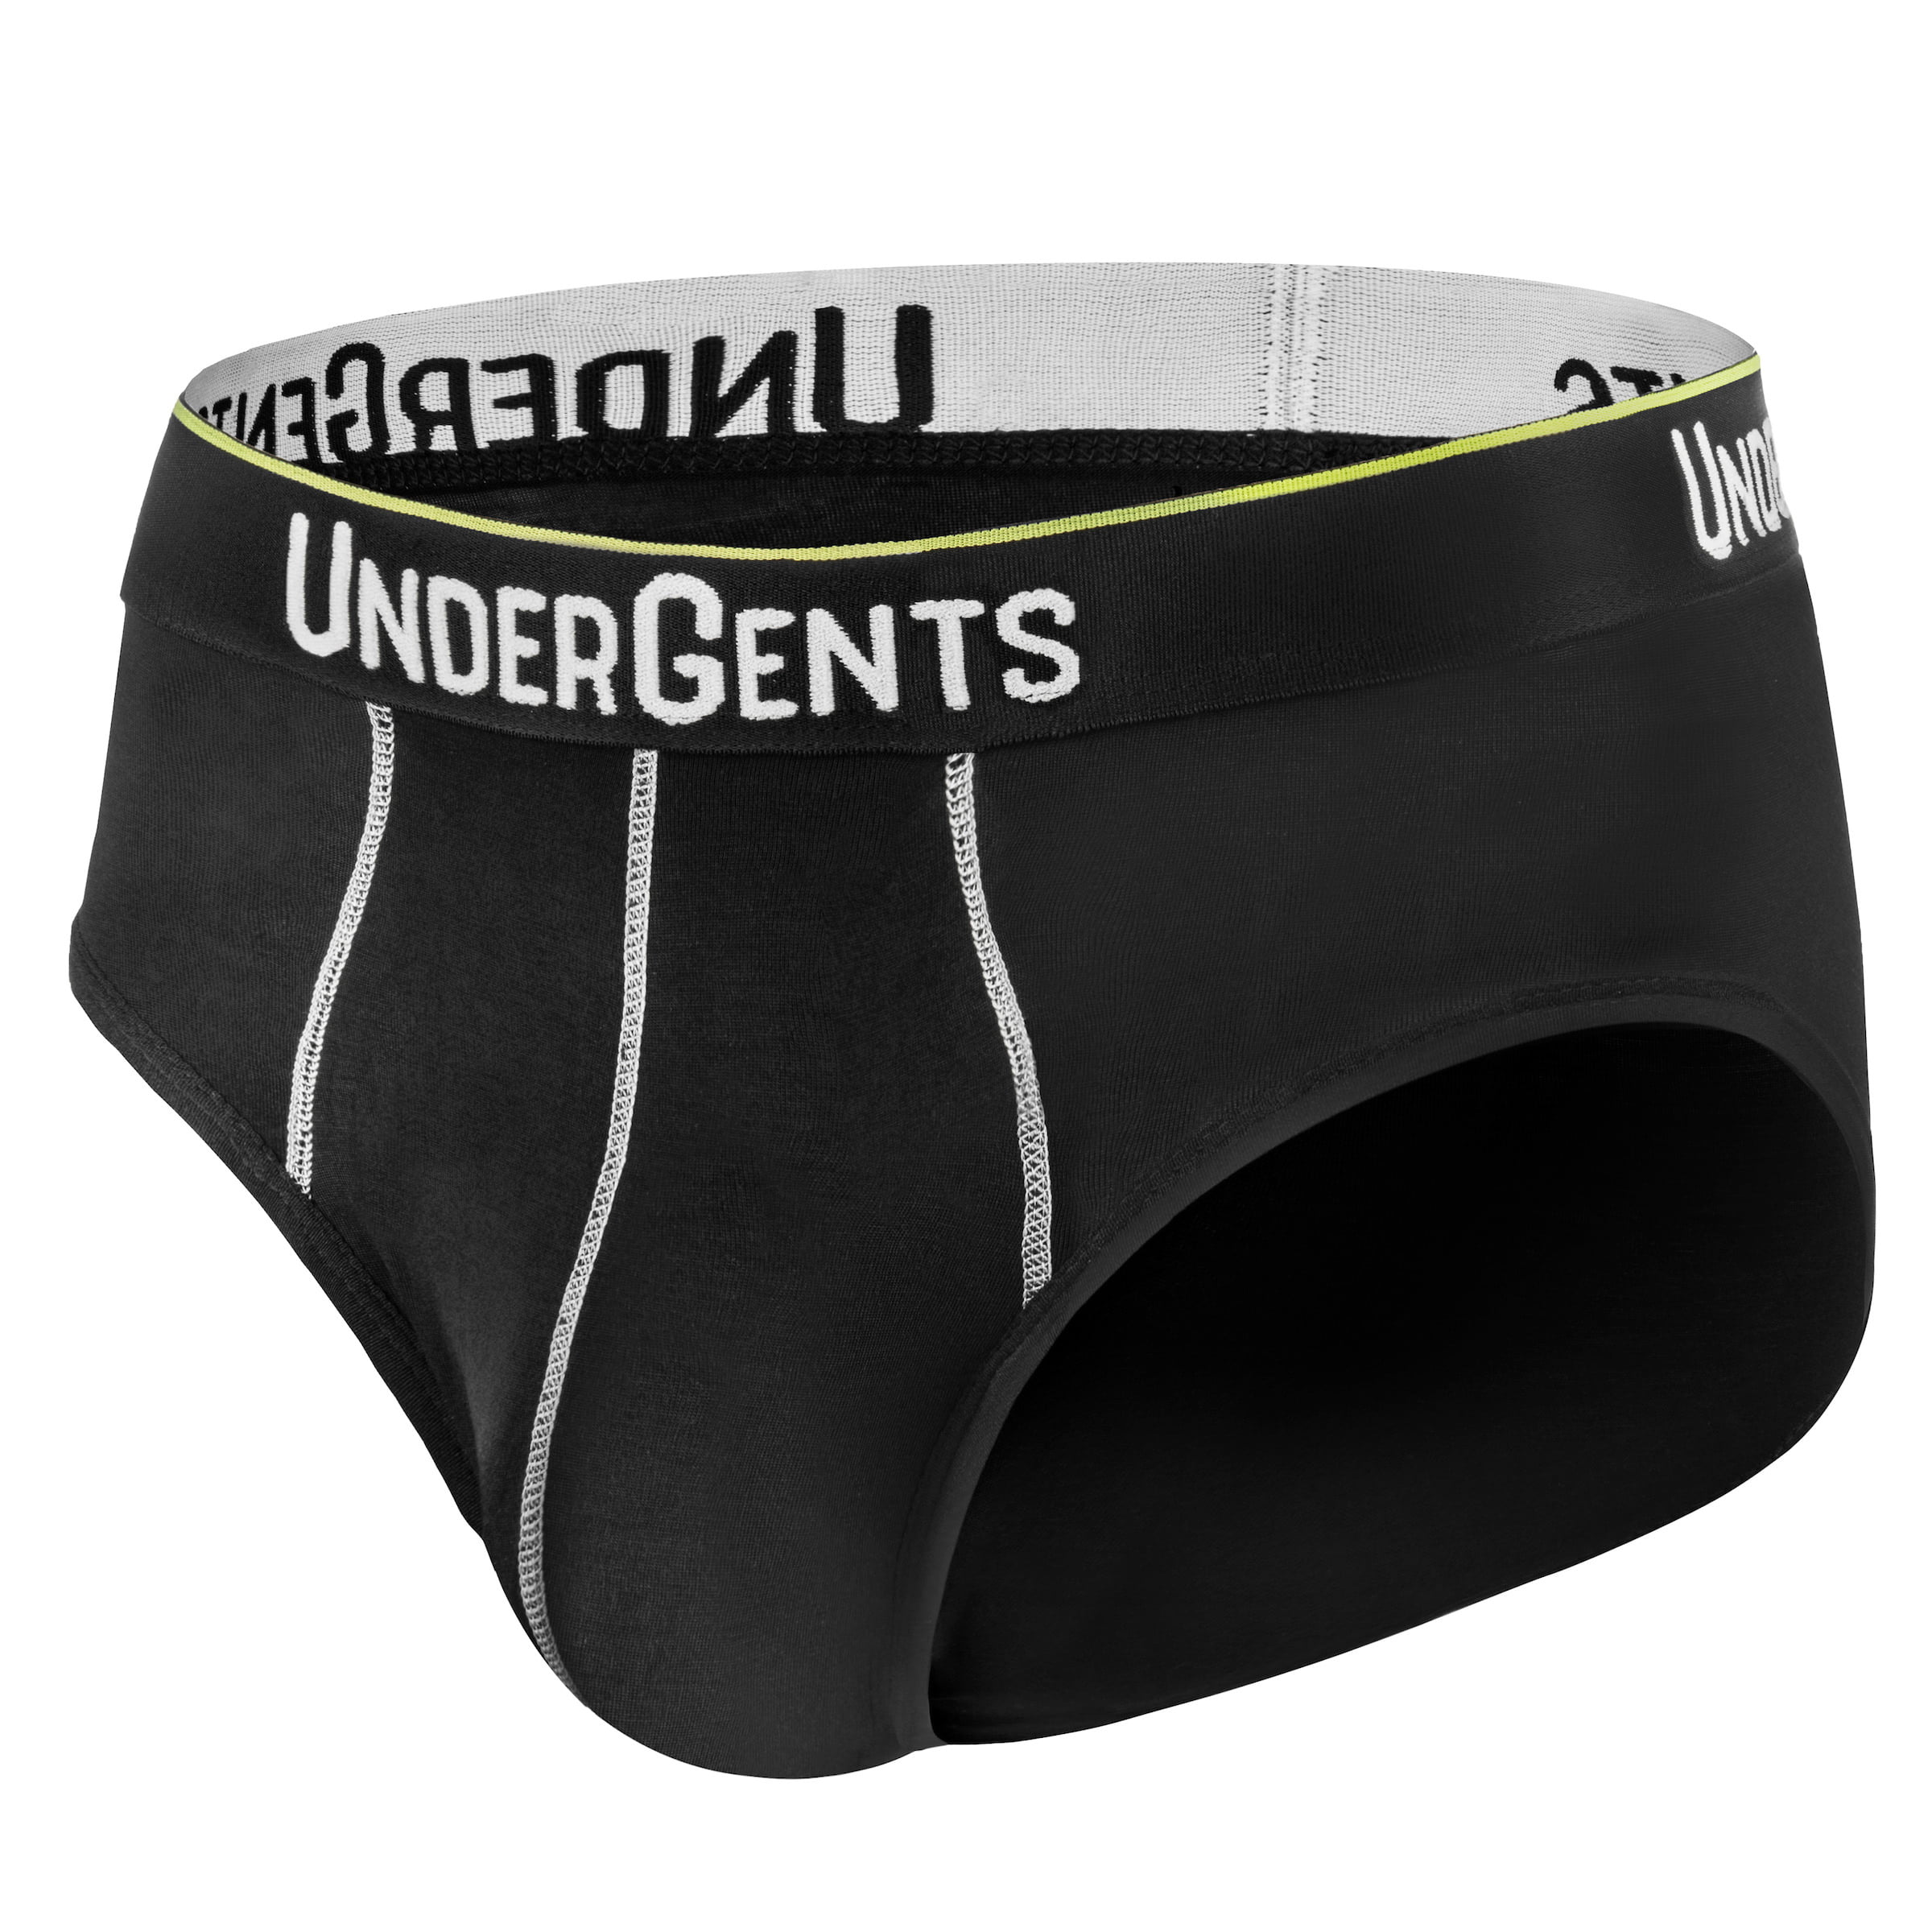 UnderGents - UnderGents Men's Brief Underwear/Underpants - Maximum ...